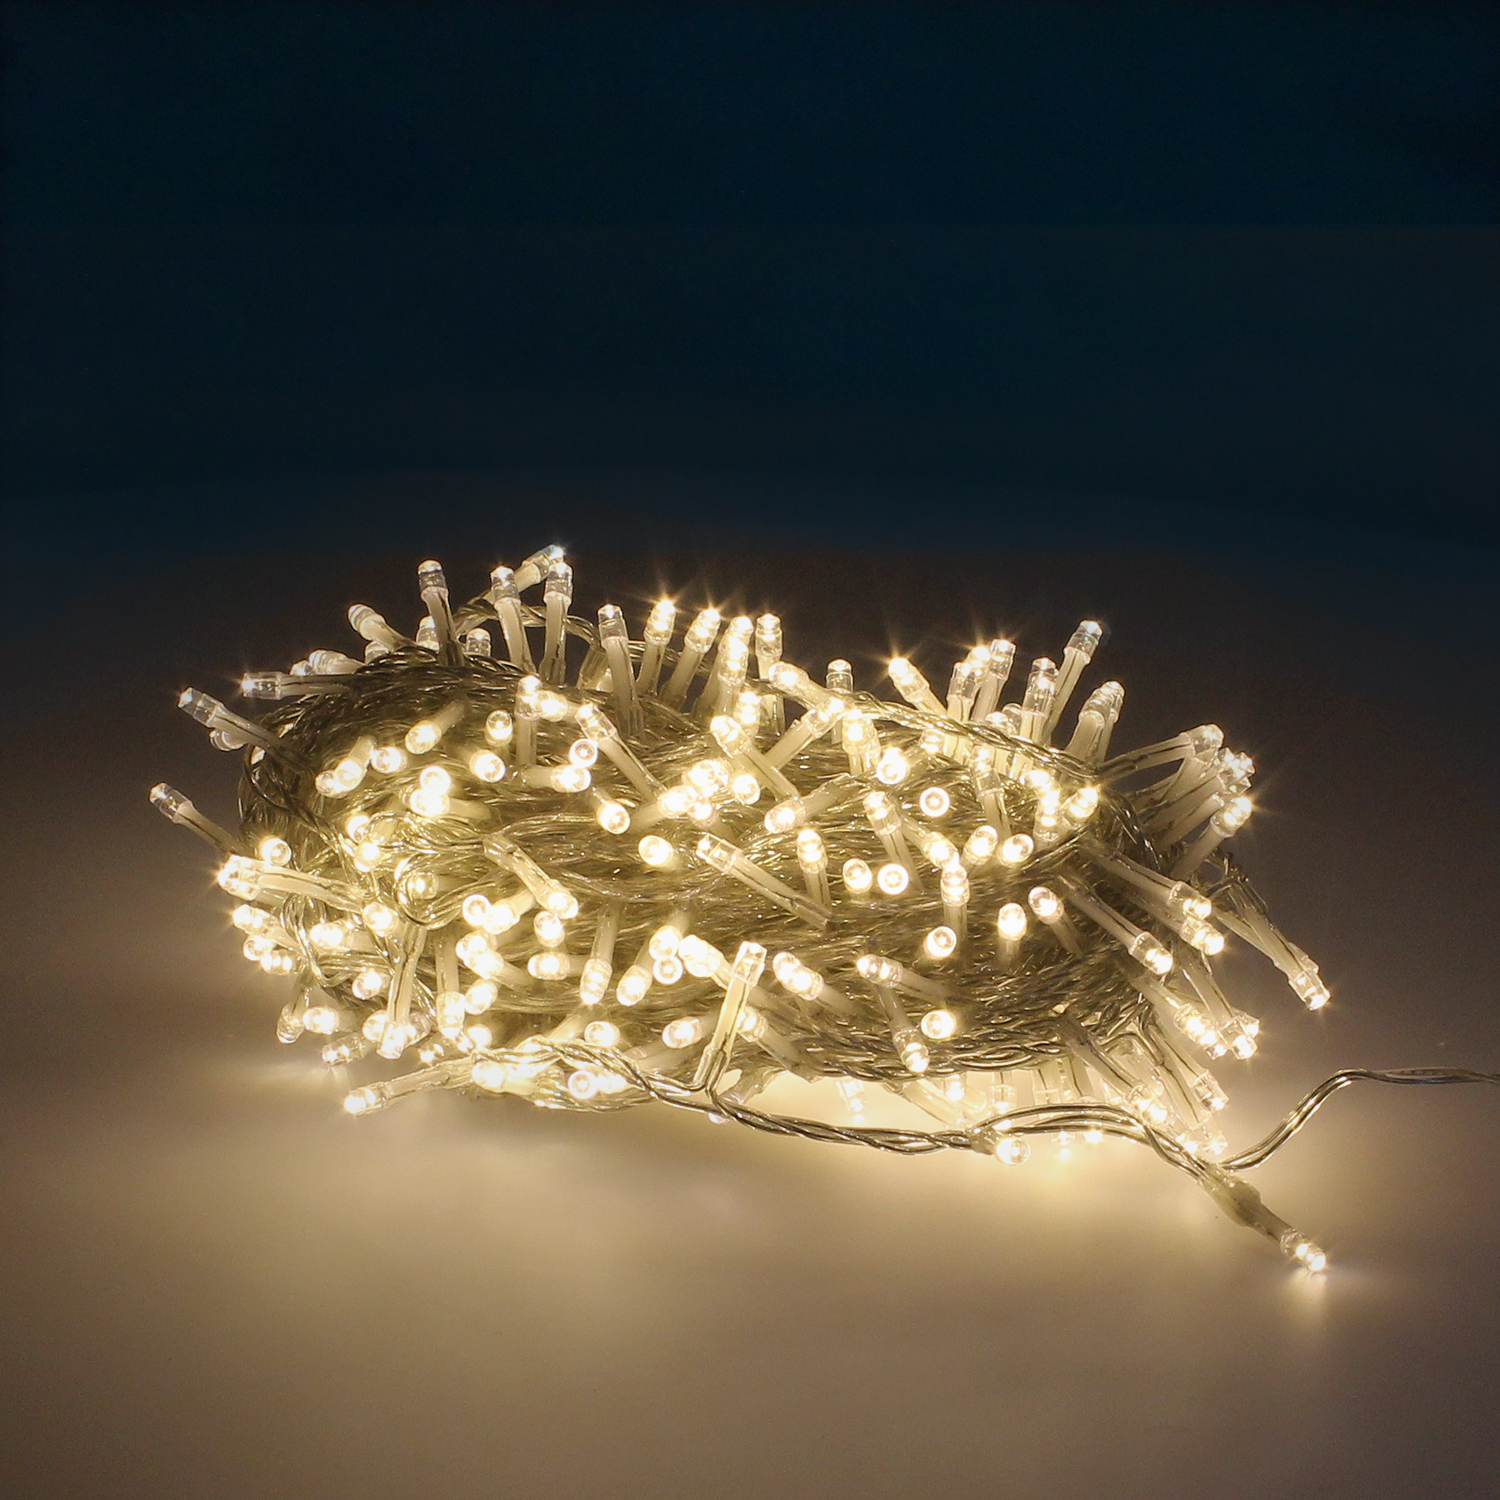 Crea un ambiente acogedor con nuestras Luces LED Blanco Cálido: 300 luces, 18m, perfectas para árboles de 150/180 cm. ¡Ilumina tu Navidad con estilo!